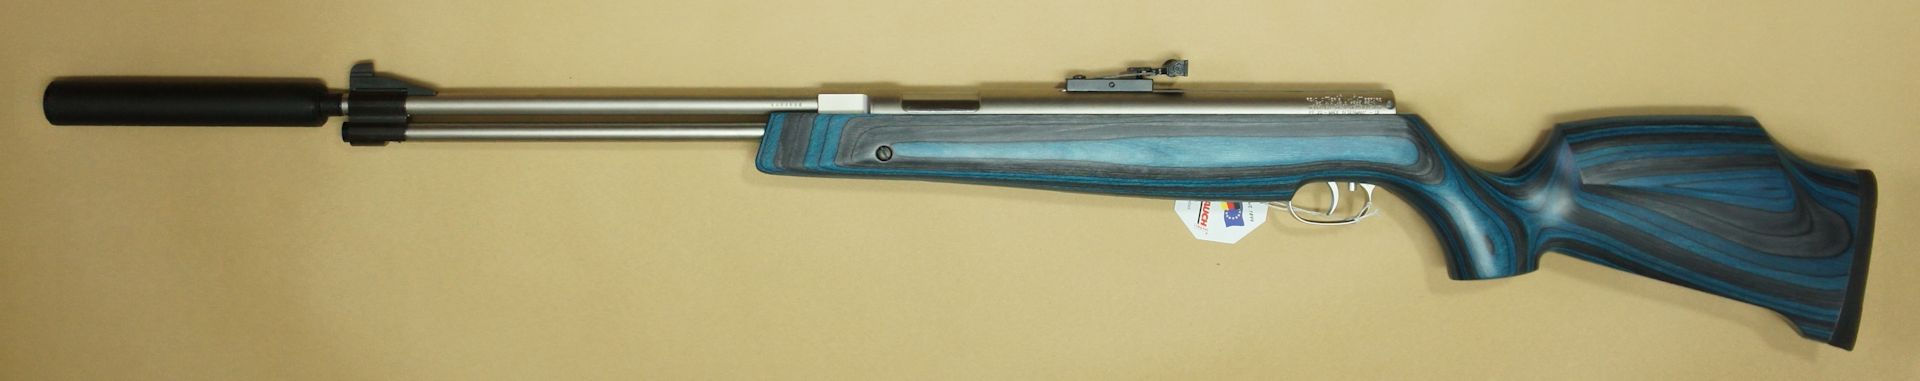 Luftgewehr HW 77 K mit Laufgewinde, blauem Schichtholzschaft und Schalldämpfer. Der schwarze Schalldämpfer gehört zum Lieferumfang.